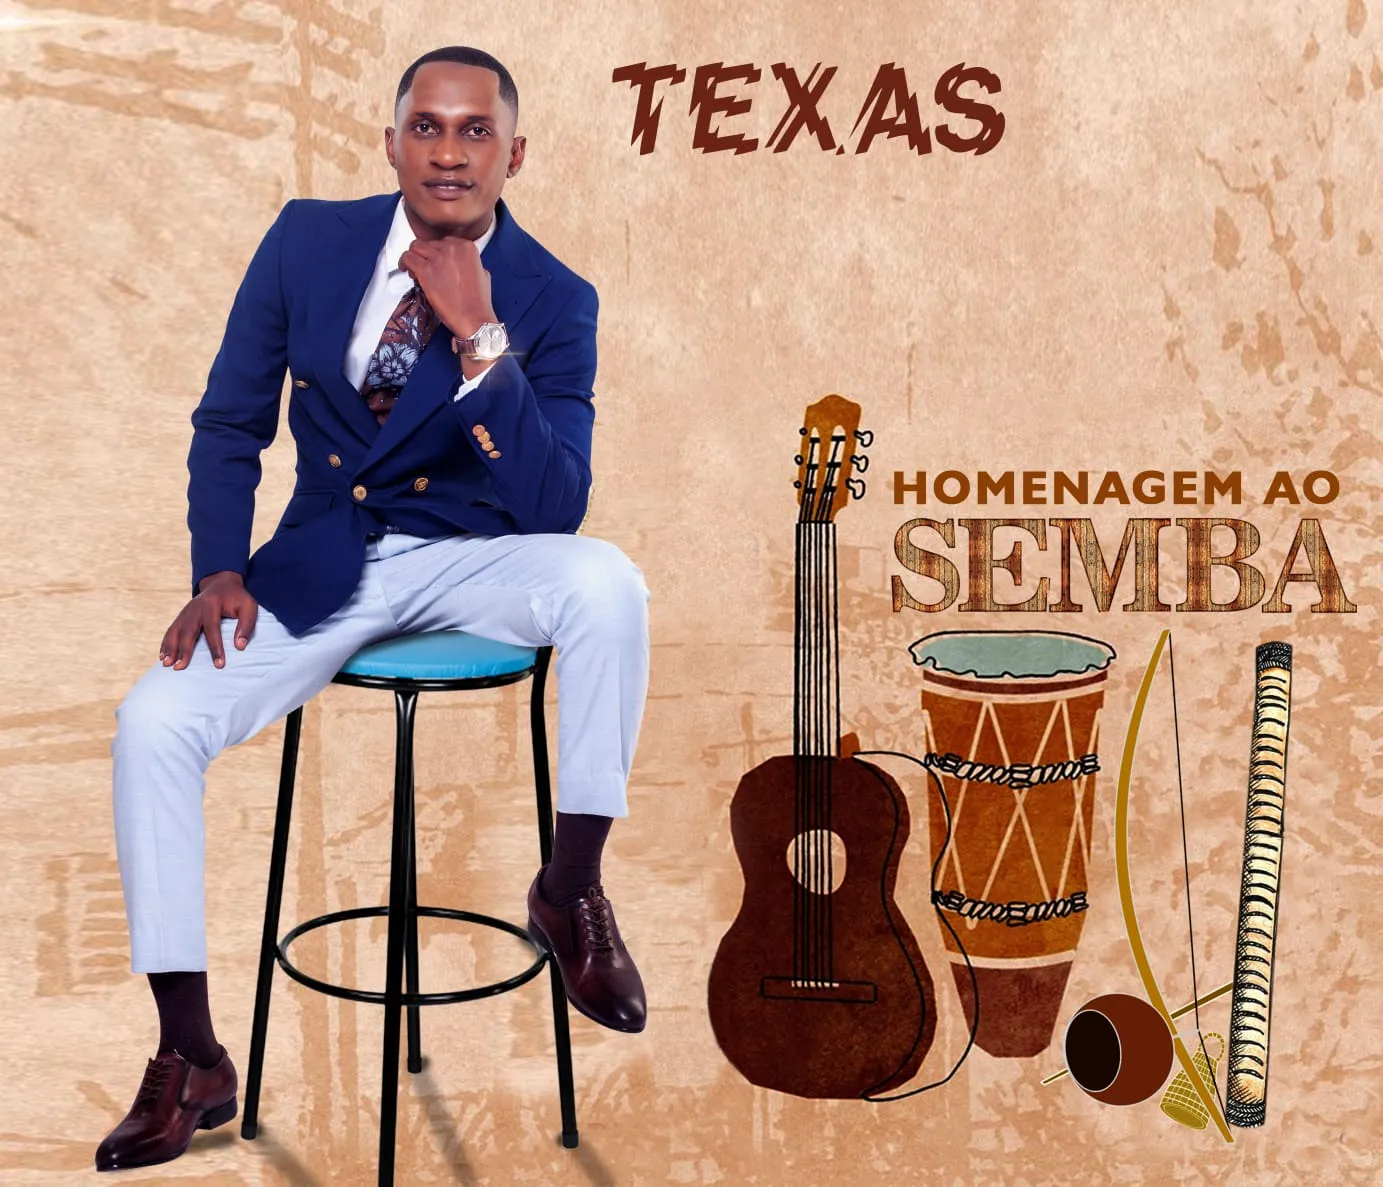 Texas – Homenagem Ao Semba